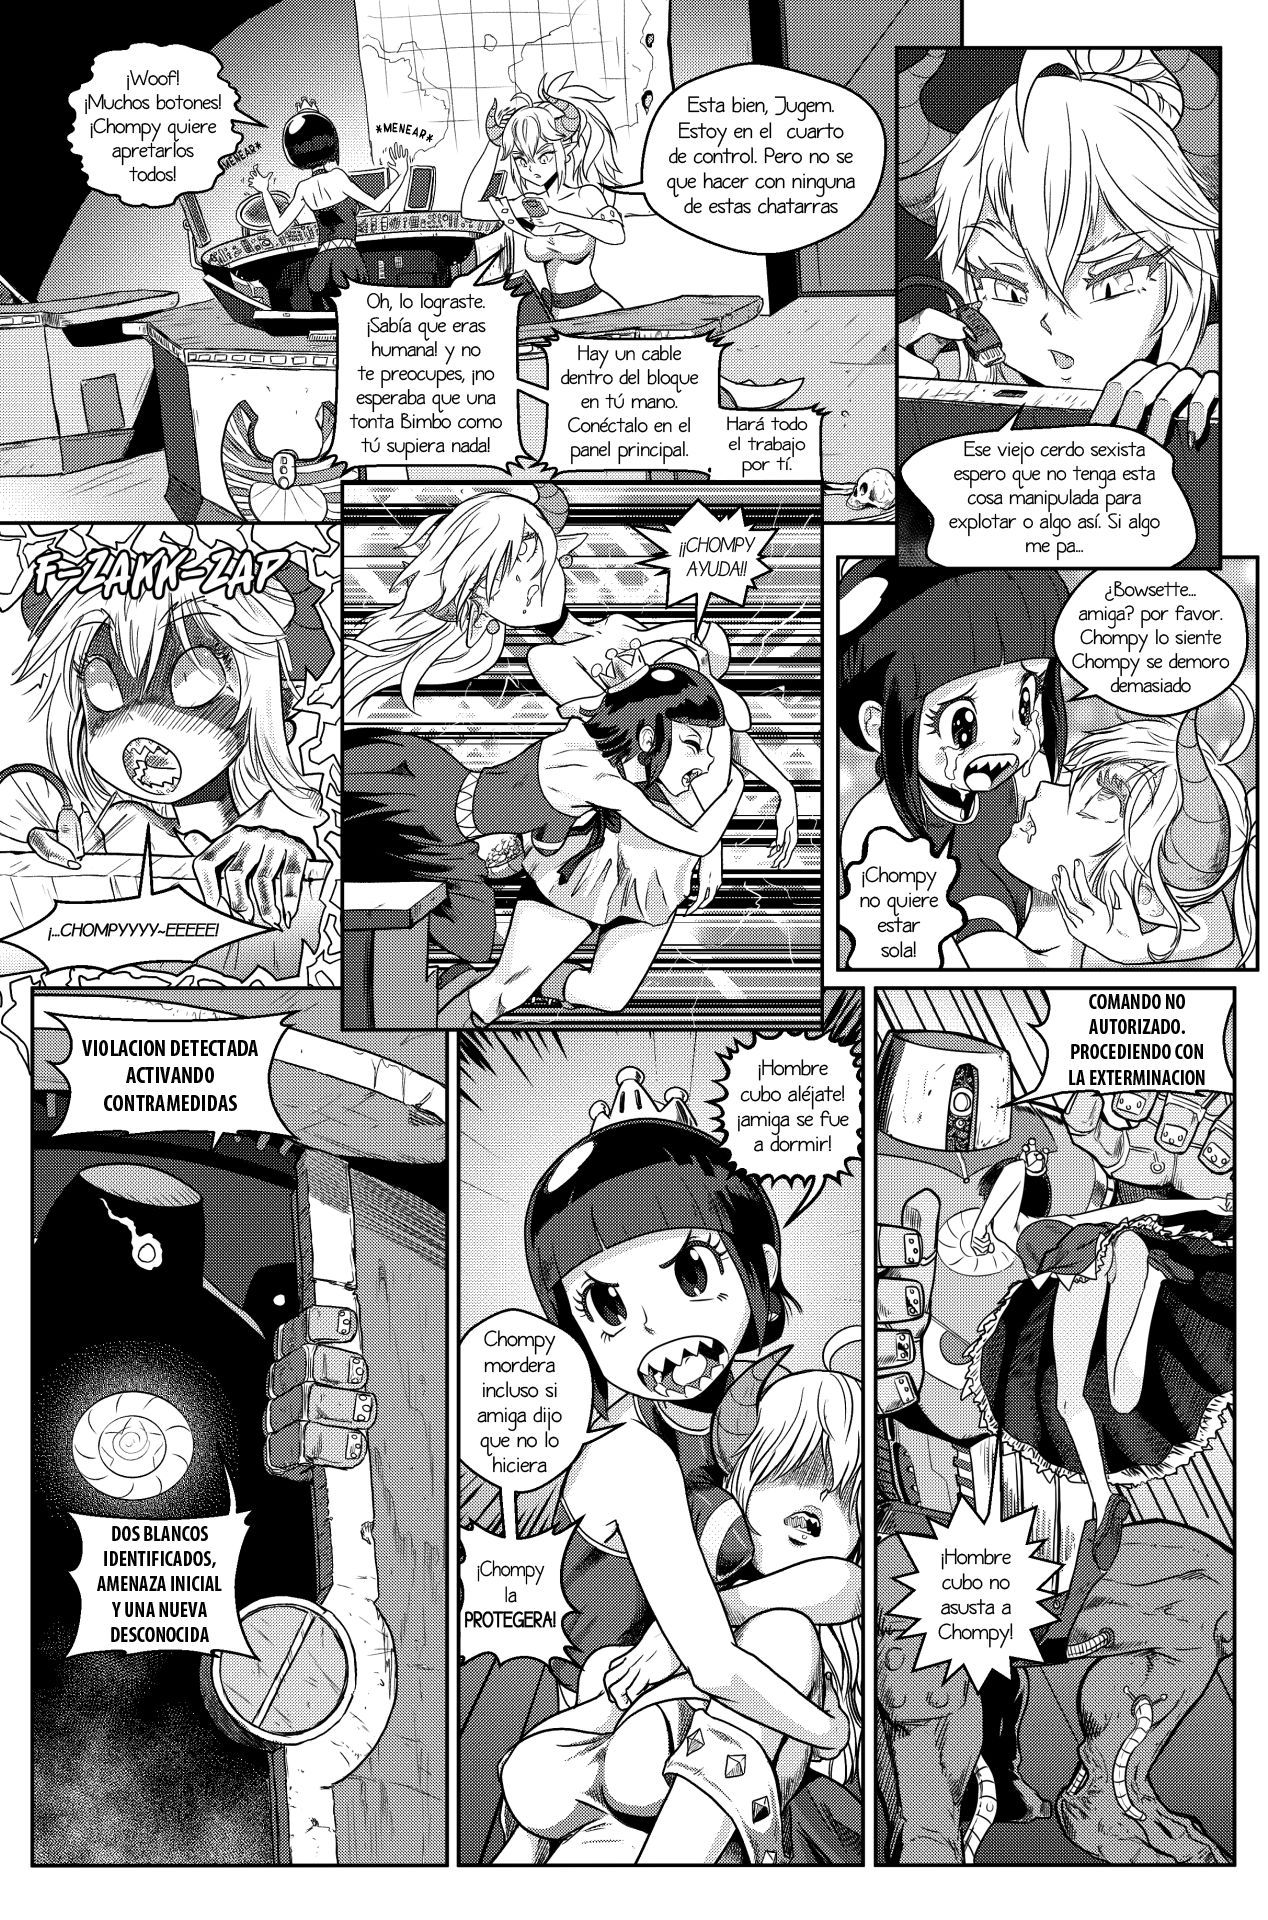 [Pencils] Bowsette Saga Vol.1 Y Vol.2 Completos - Vol.3 En Progreso (Mario Bros.) [Spanish] by Arkoniusx 45